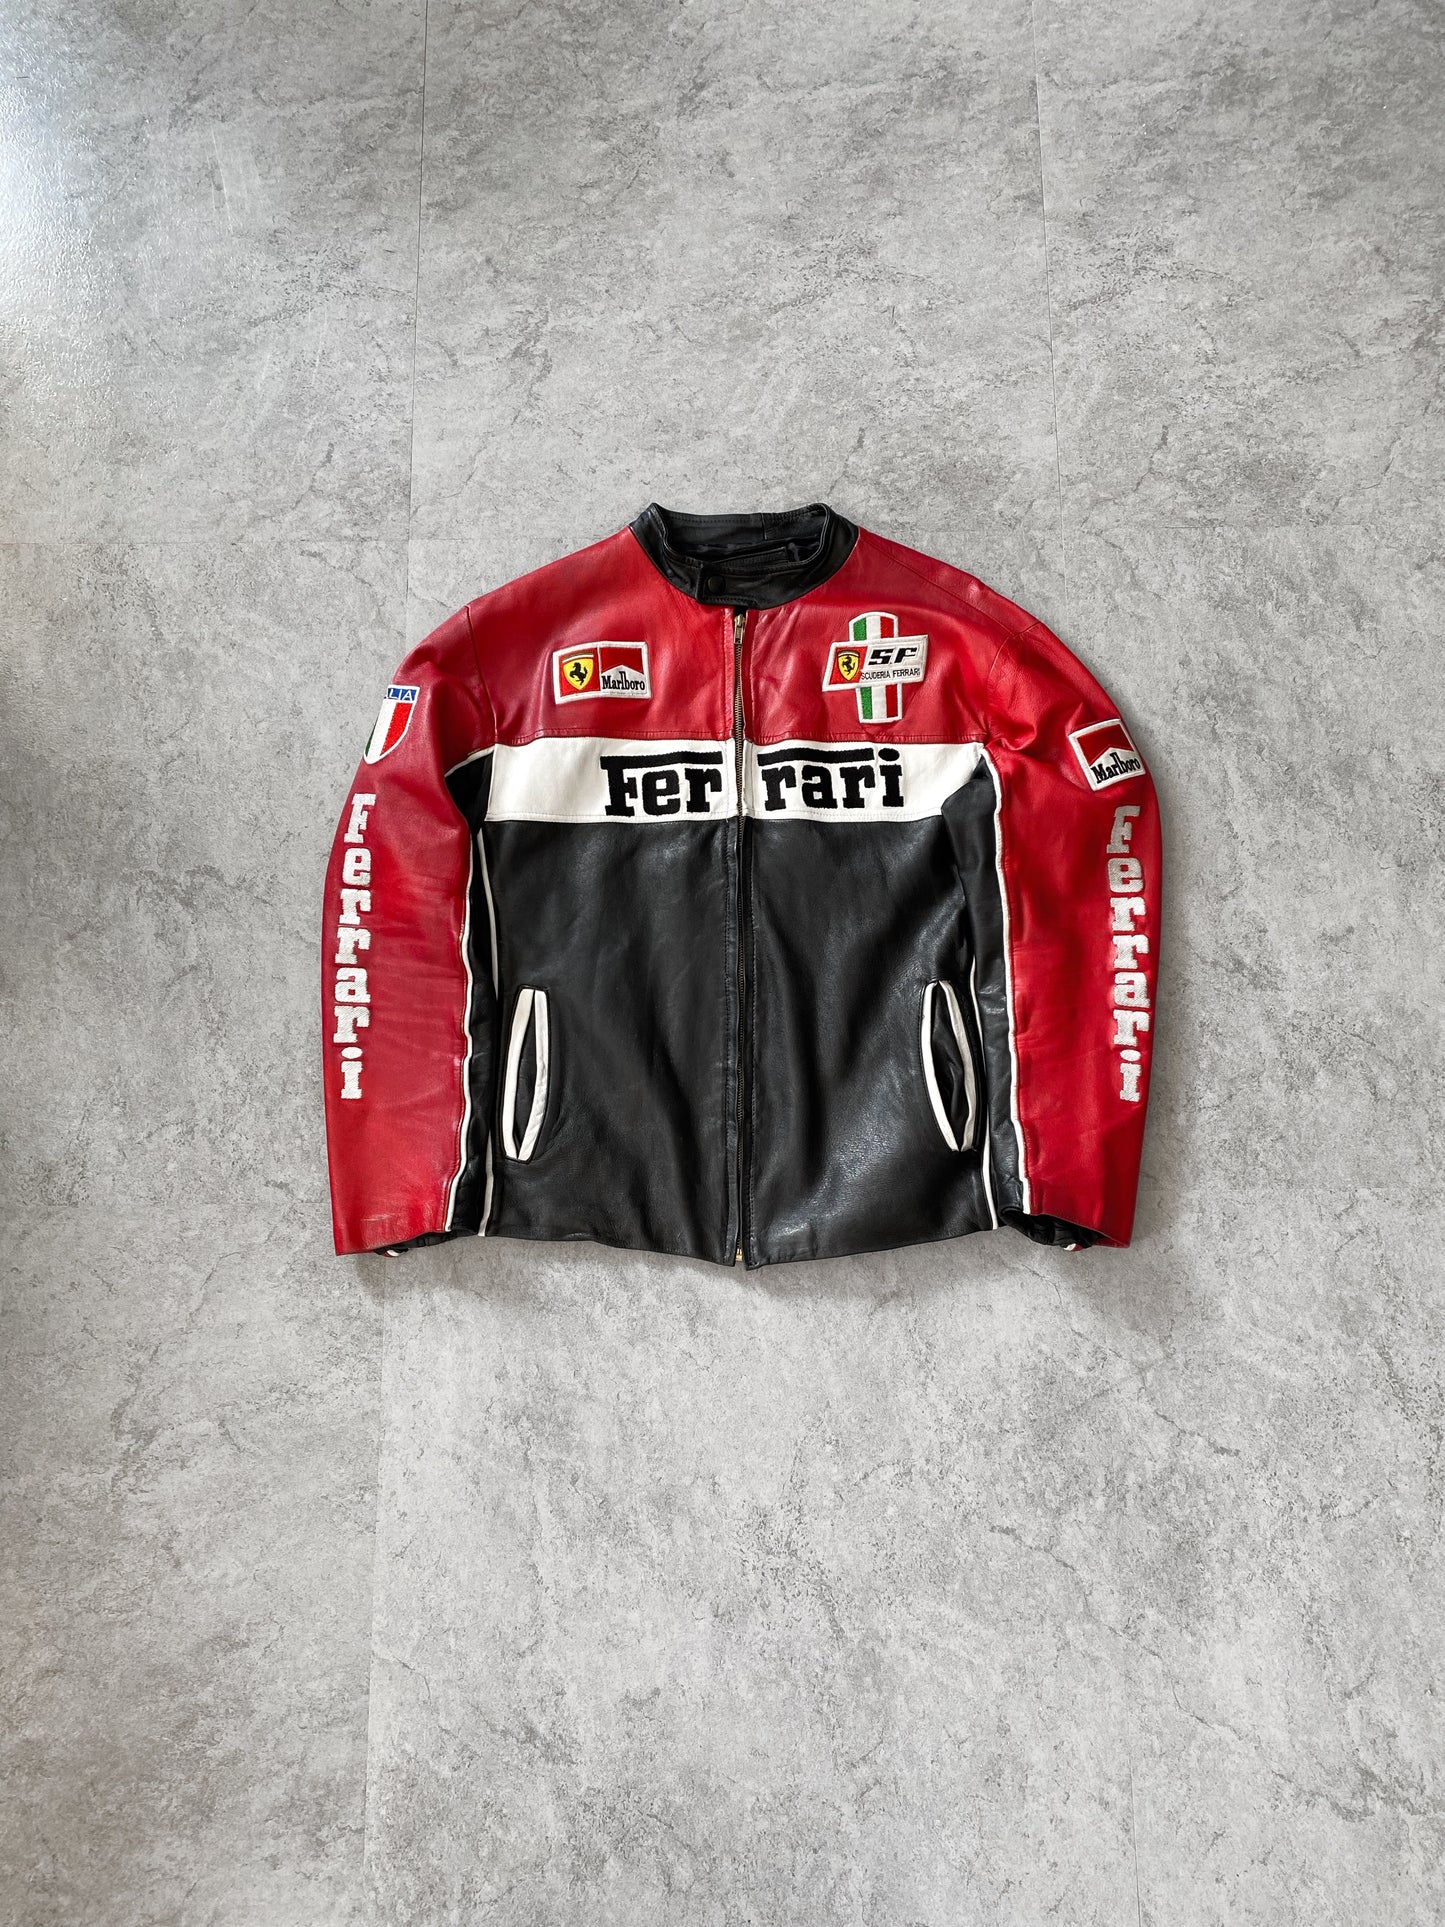 90s Vintage Ferrari Racing Leather Jacket